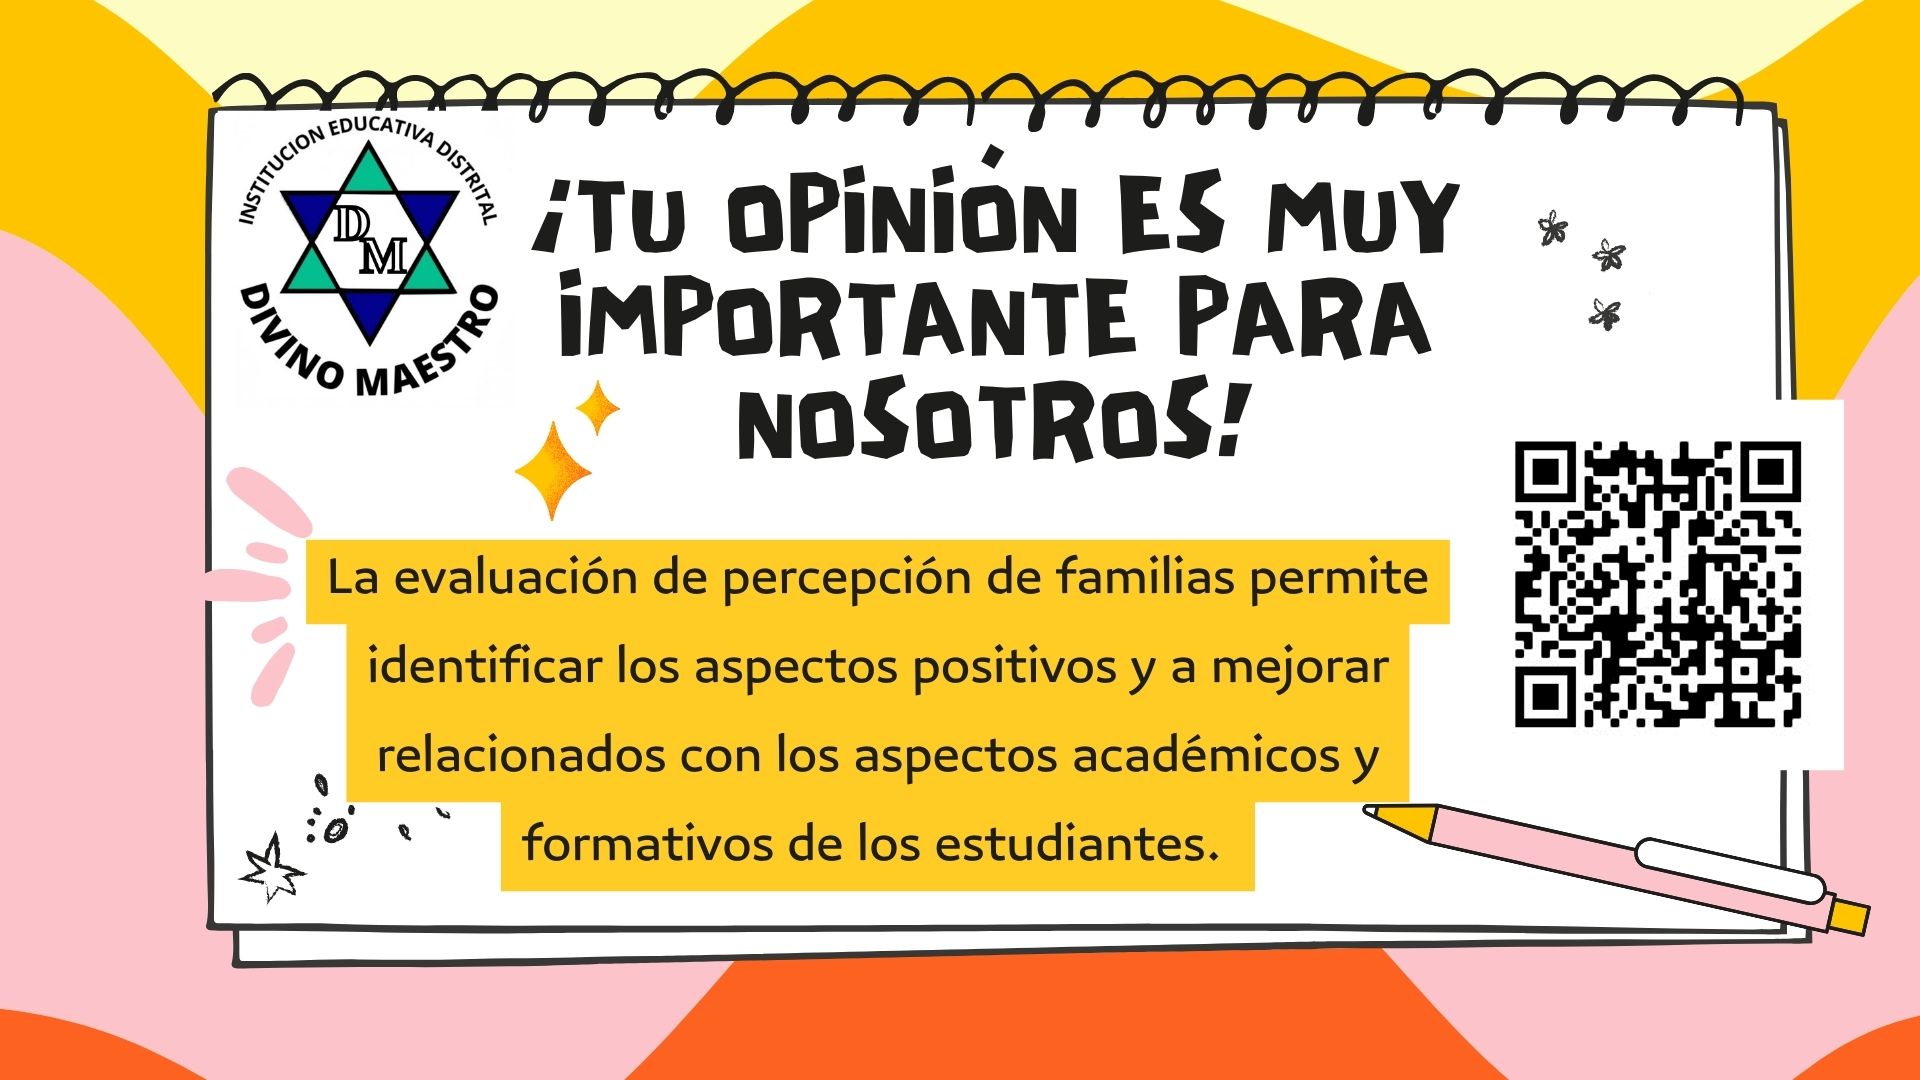 En el siguiente enlace podrá encontrar el formulario para diligenciar la encuesta https://formularios.educacionbogota.edu.co/index.php/353559?lang=es 